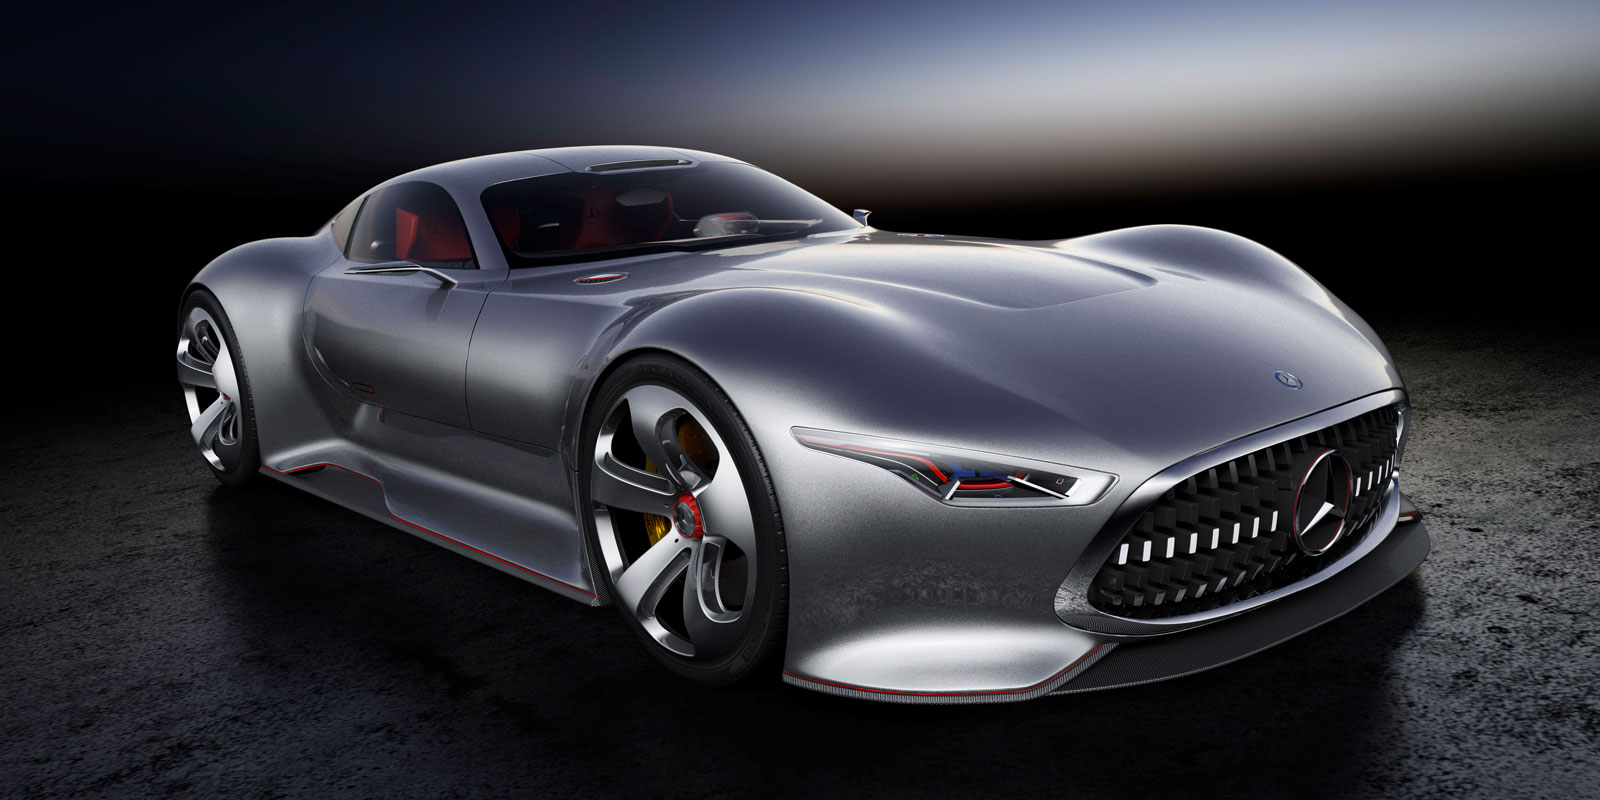 Mercedes-Benz AMG Vision Gran Turismo Concept (2013)